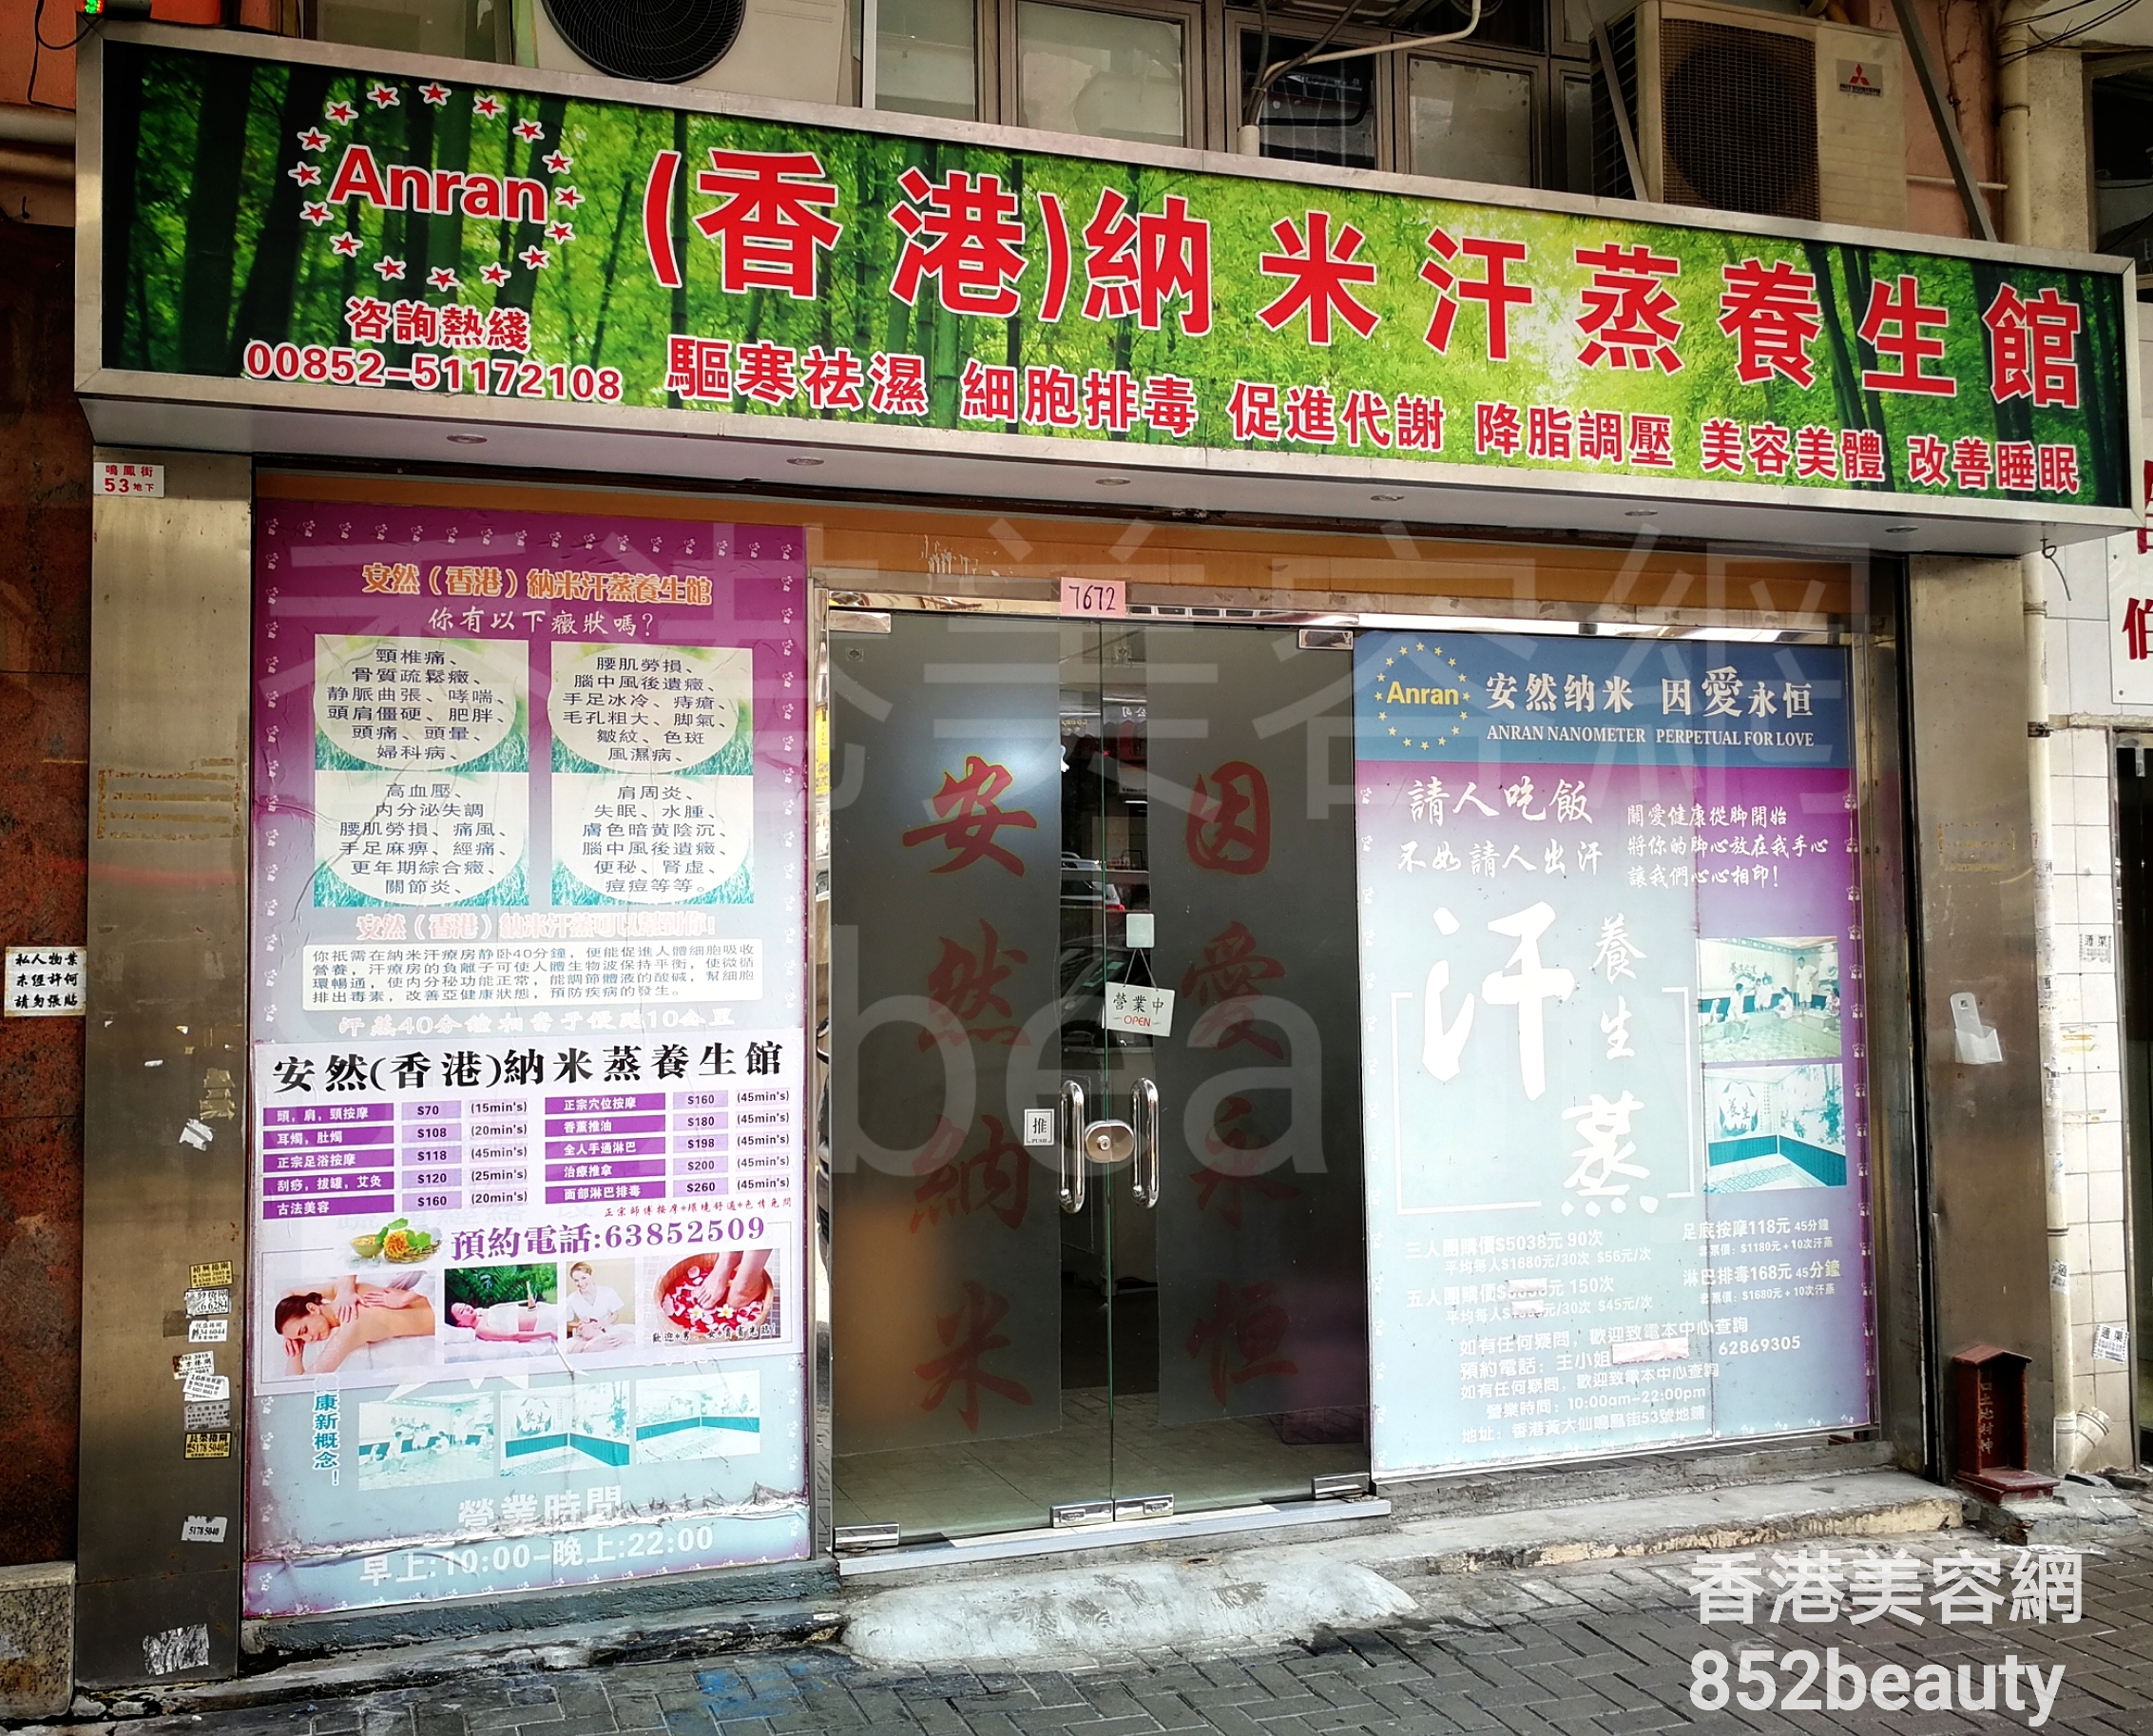 面部護理: (香港)納米汗蒸養生館